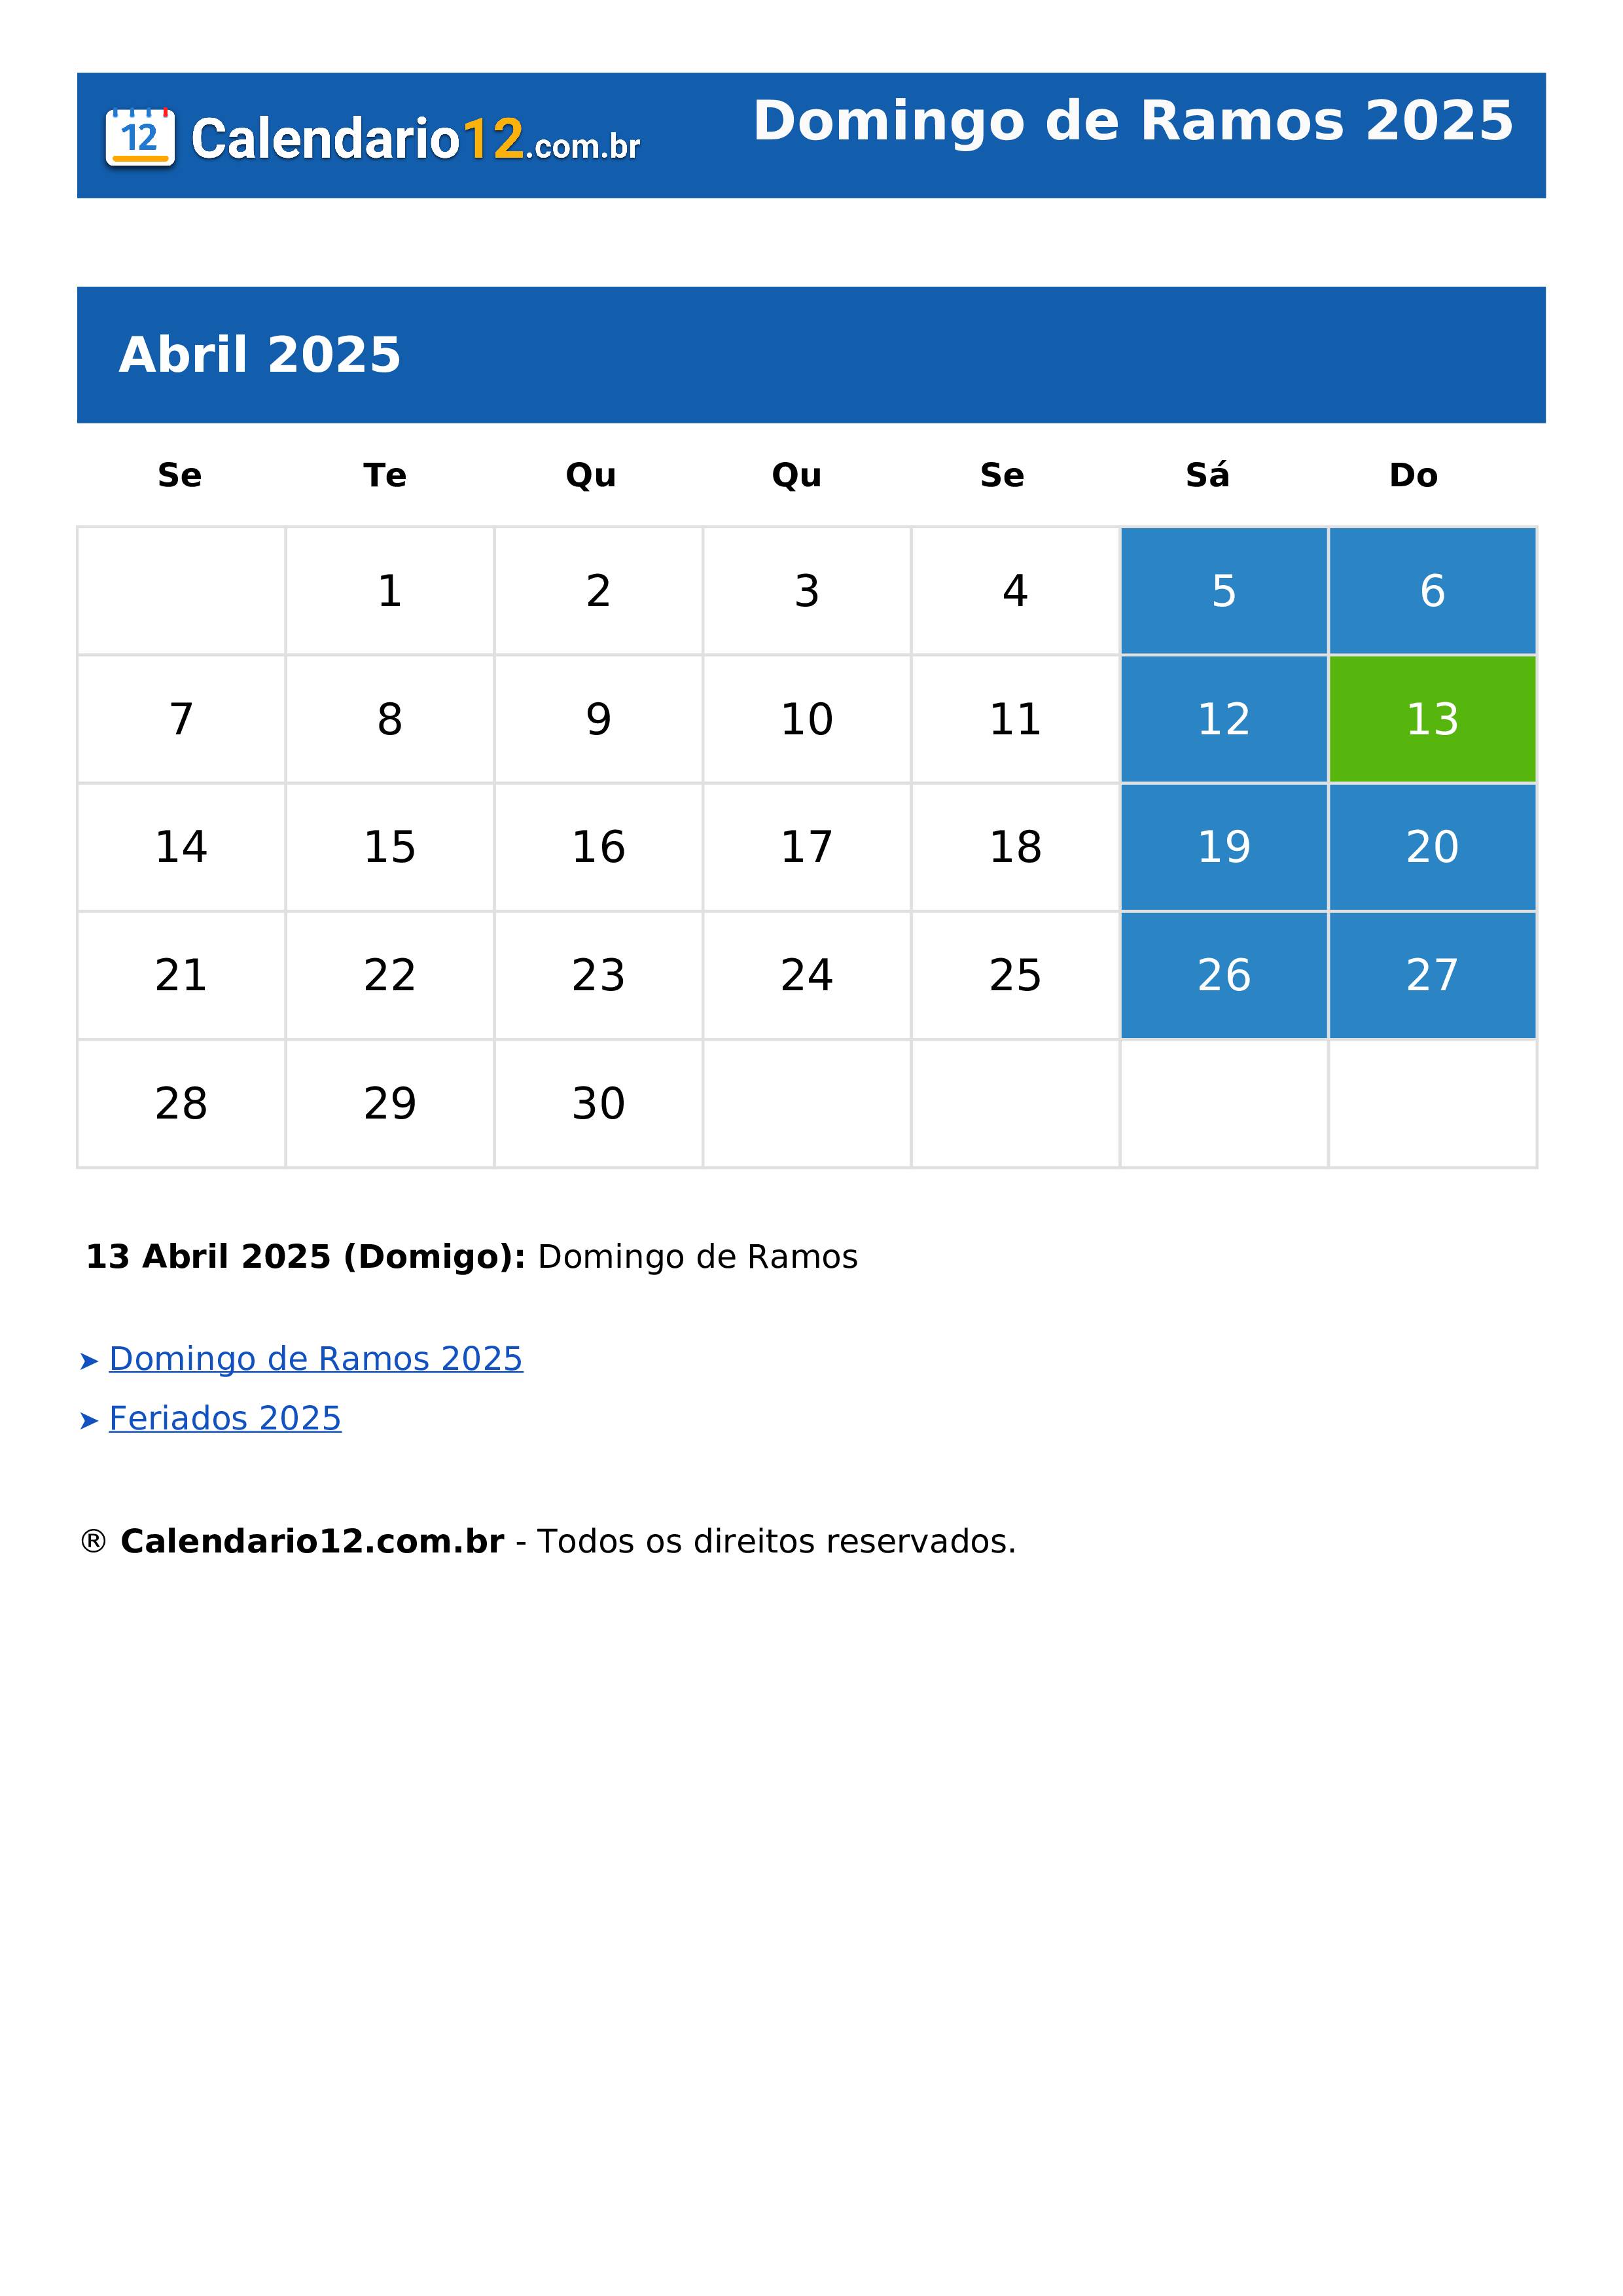 Domingo de Ramos 2025